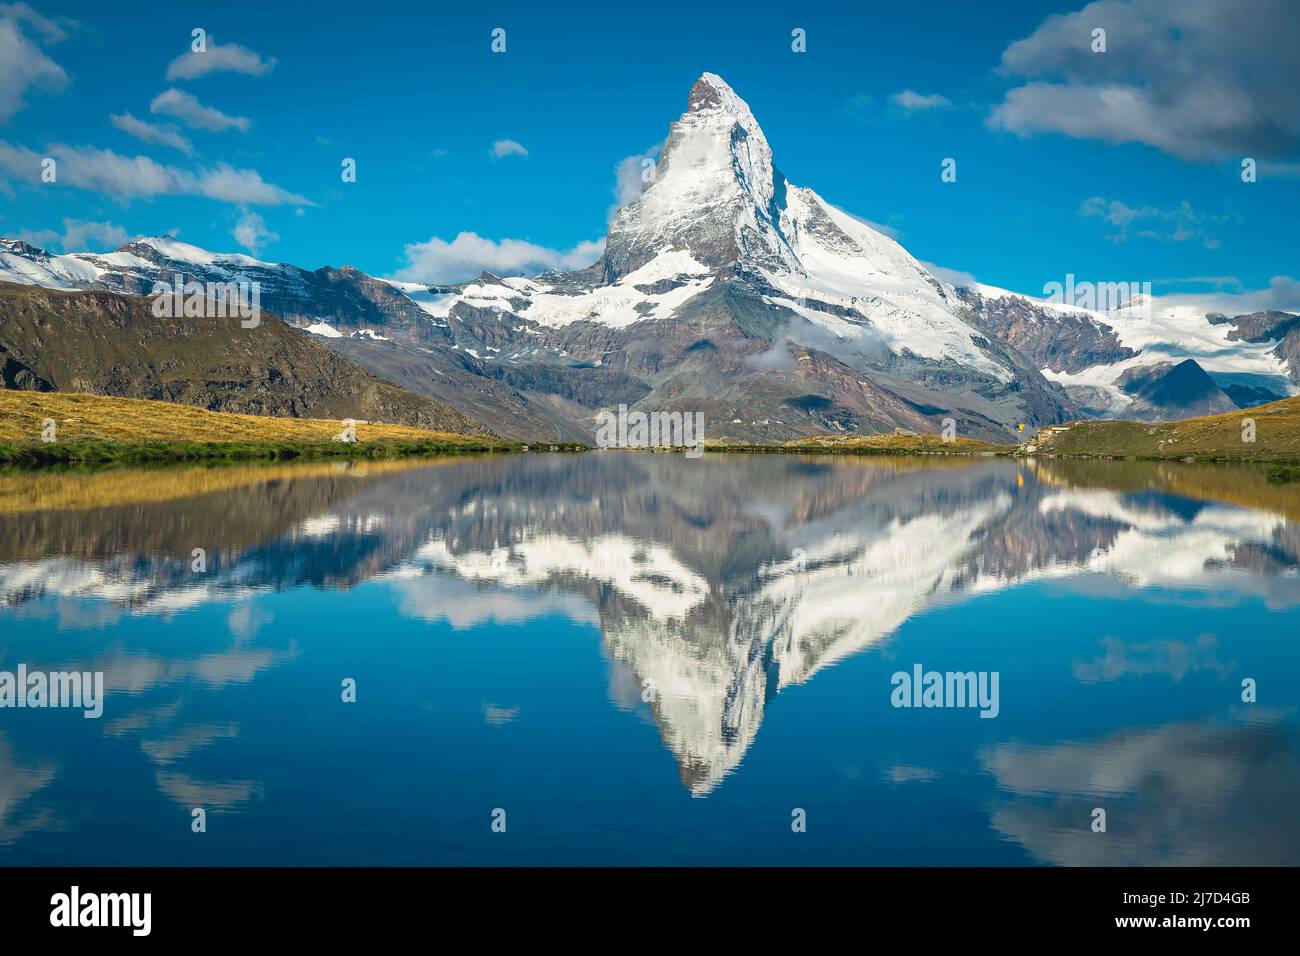 Einer der ikonischsten Berge der Welt, Matterhorn Blick vom atemberaubenden Stellisee See, Zermatt, Kanton Wallis, Schweiz, Europa Stockfoto